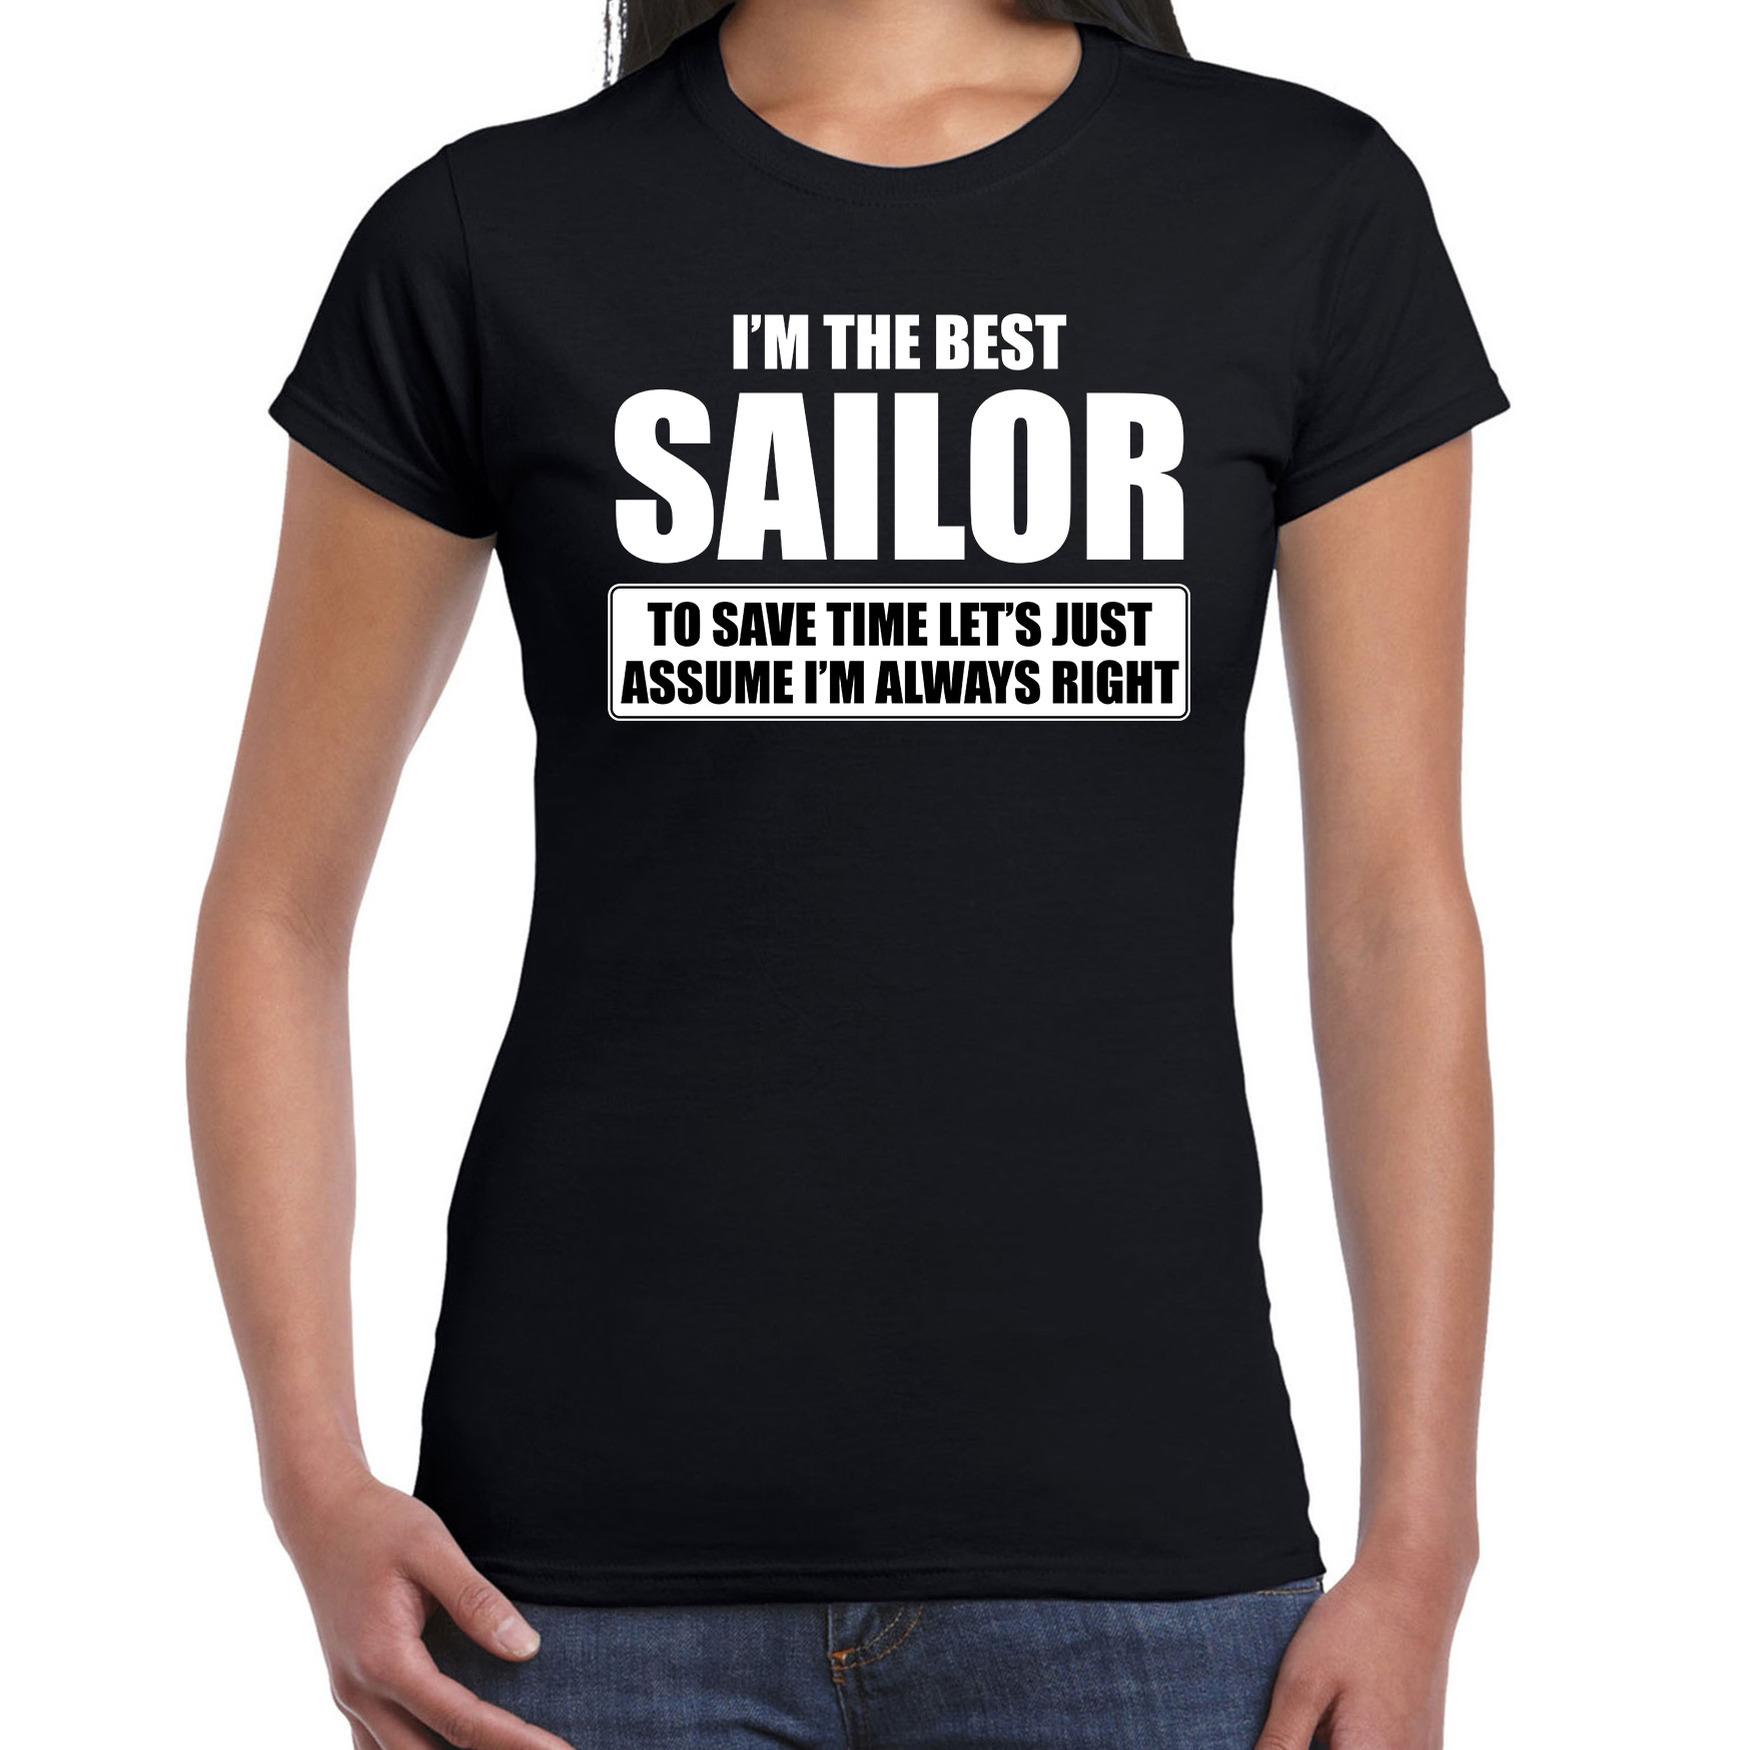 I'm the best sailor t-shirt zwart dames De beste matroos cadeau